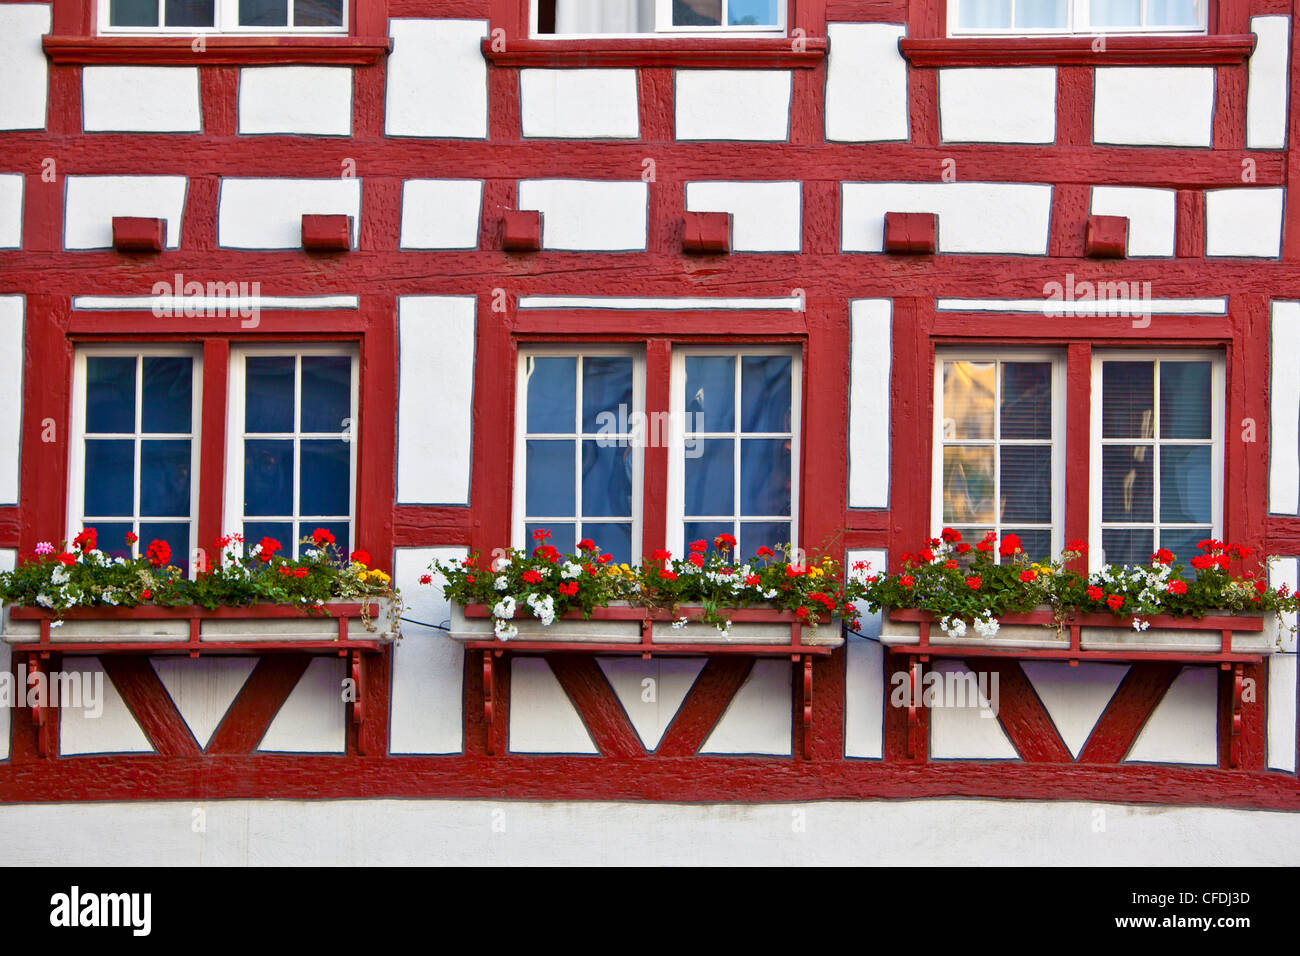 Half-timbered facades, St. Gallen, Switzerland, Europe Stock Photo